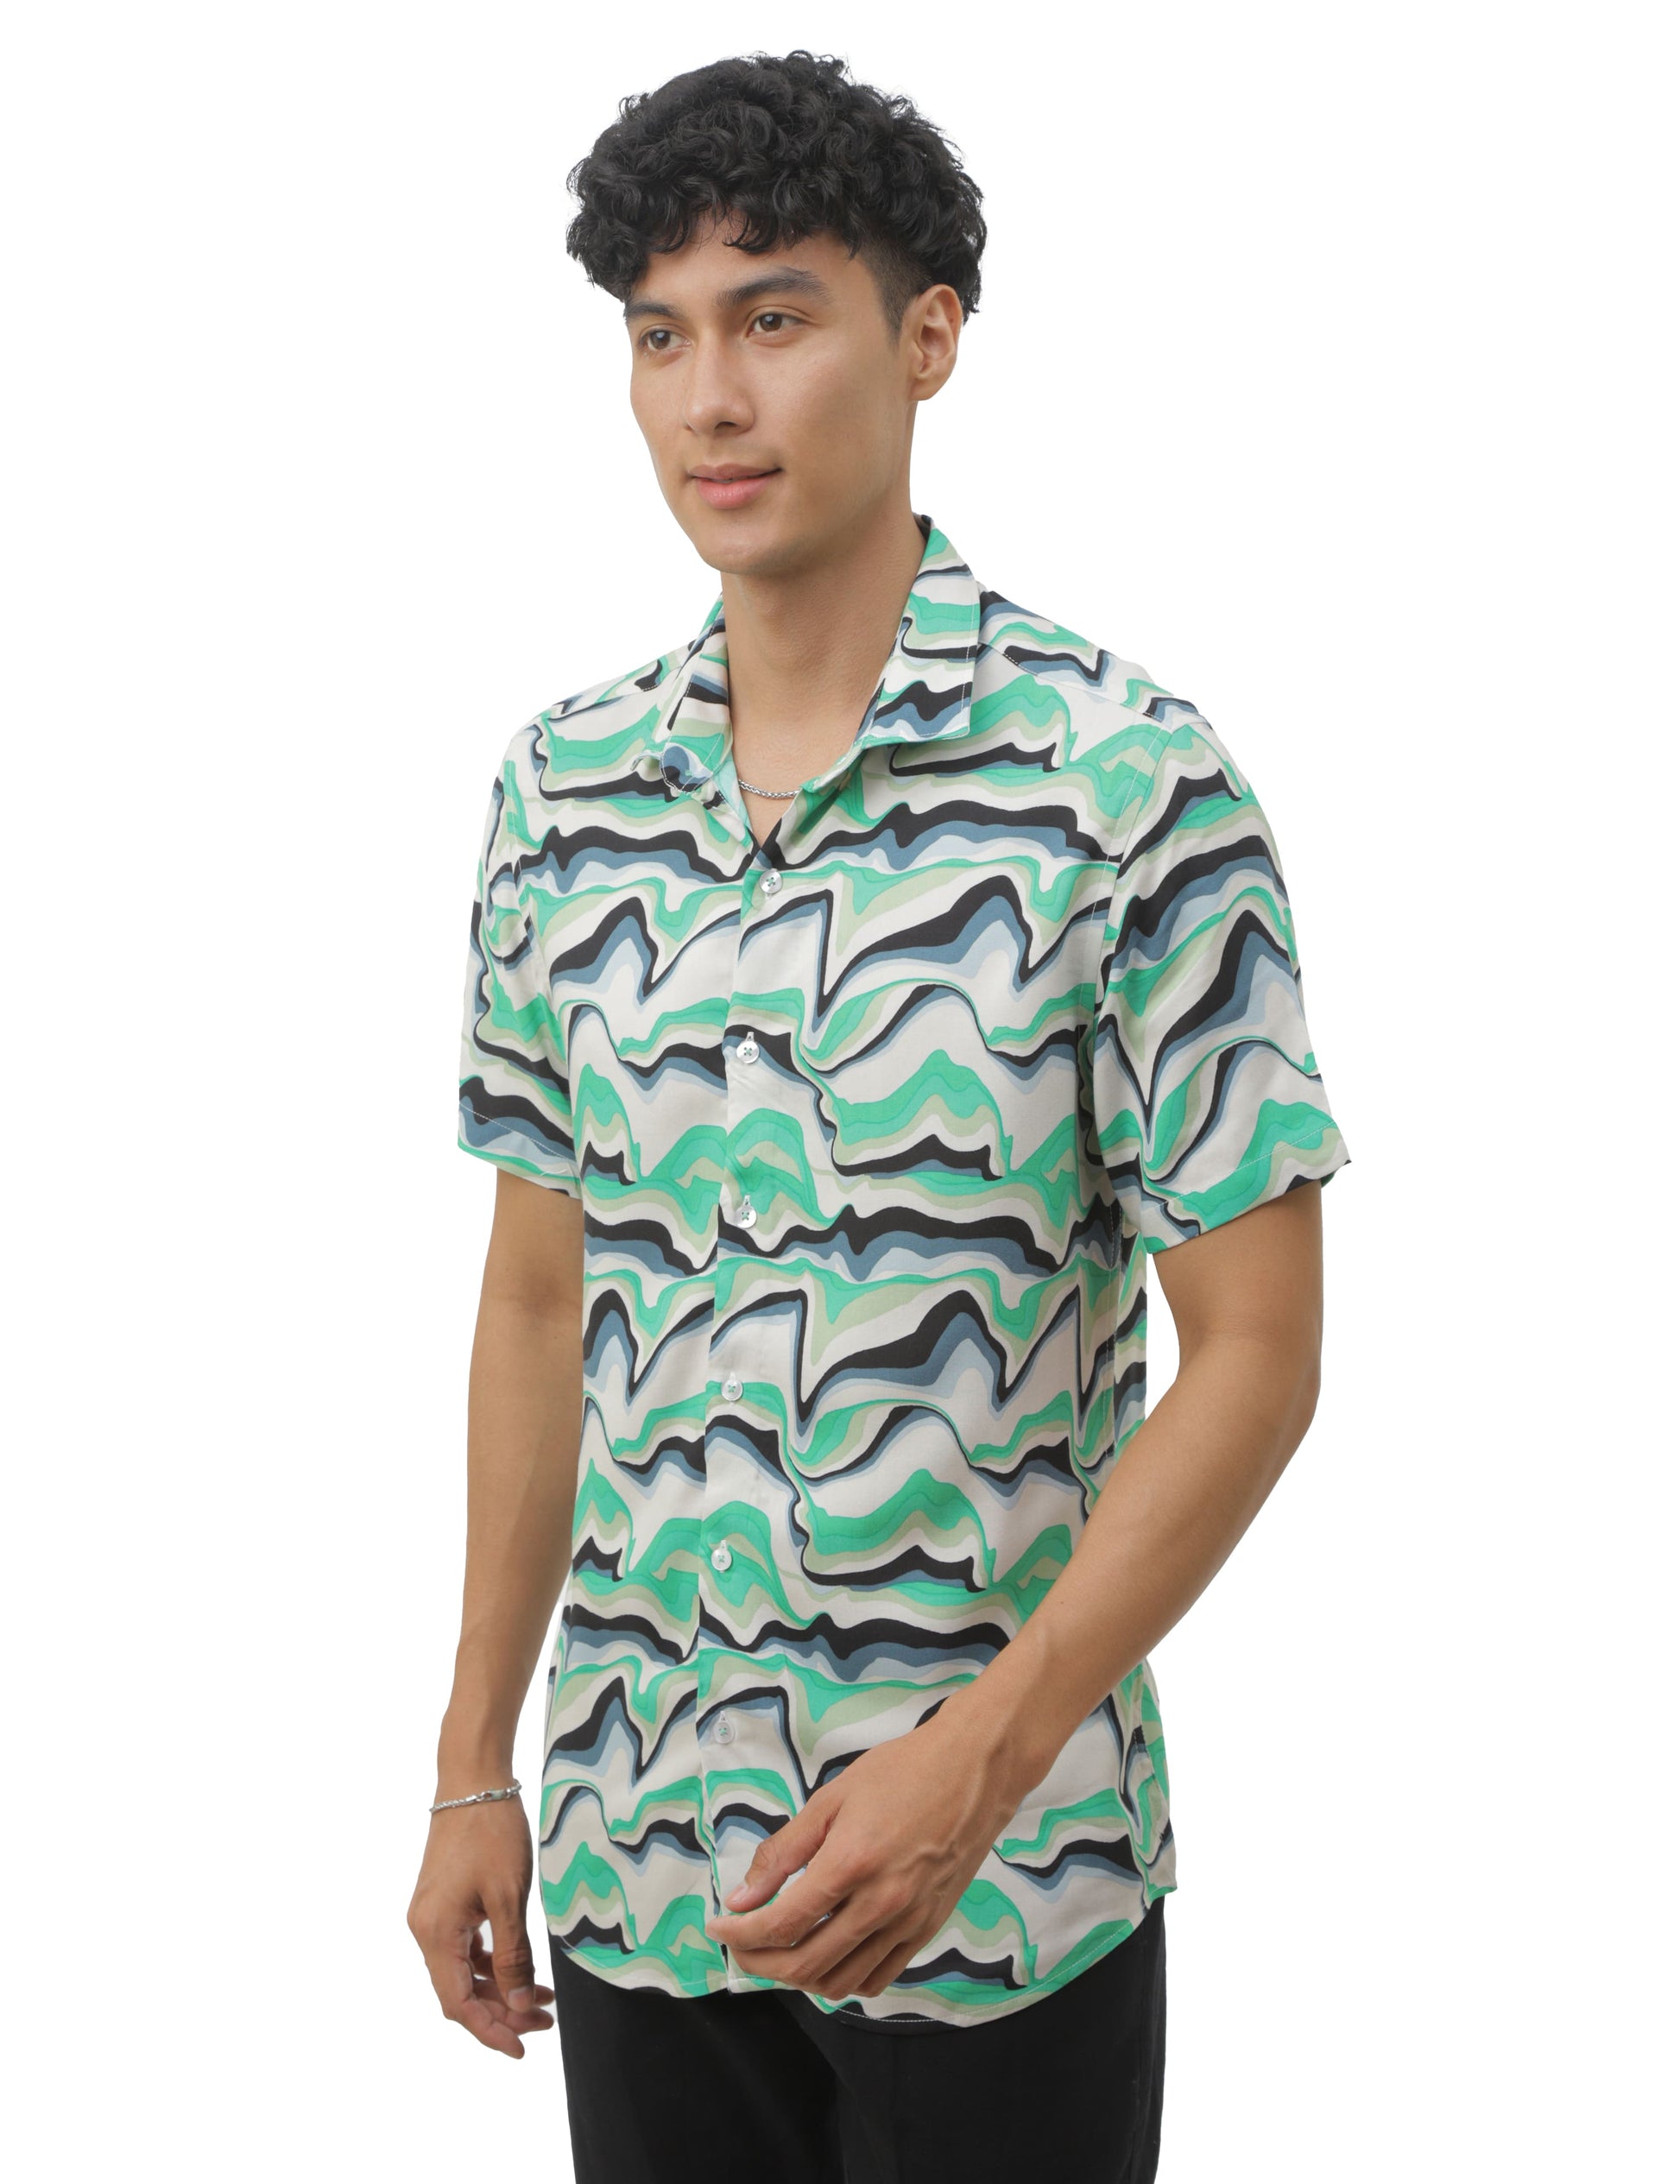 Seaweed Green Printed Shirt for Men 